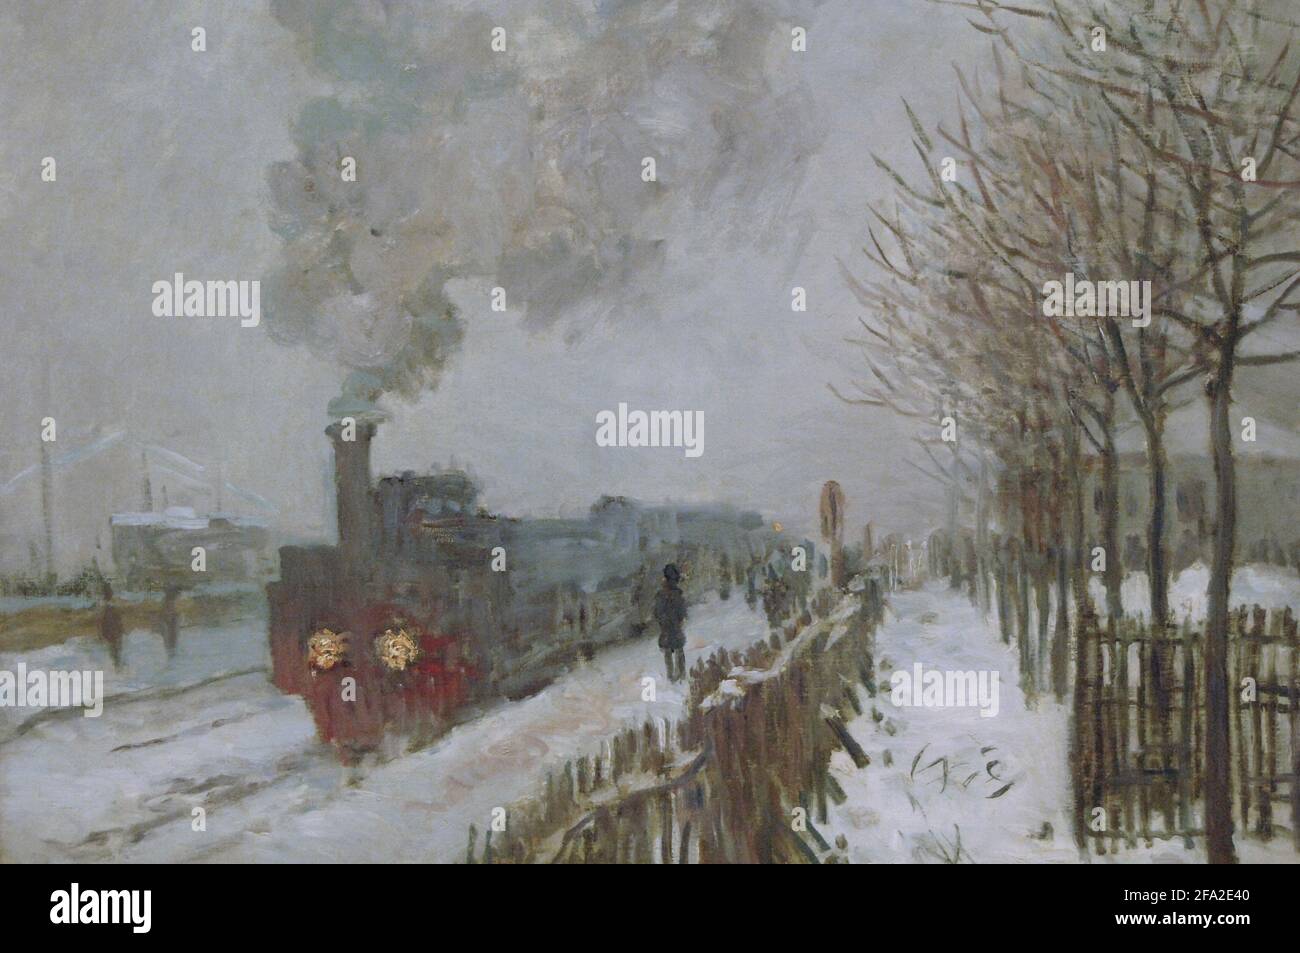 Claude Monet (1840-1926). Französischer impressionistischer Maler. Trainieren Sie im Schnee oder in der Lokomotive, 1875. Marmottan Monet Museum. Paris. Frankreich. Stockfoto